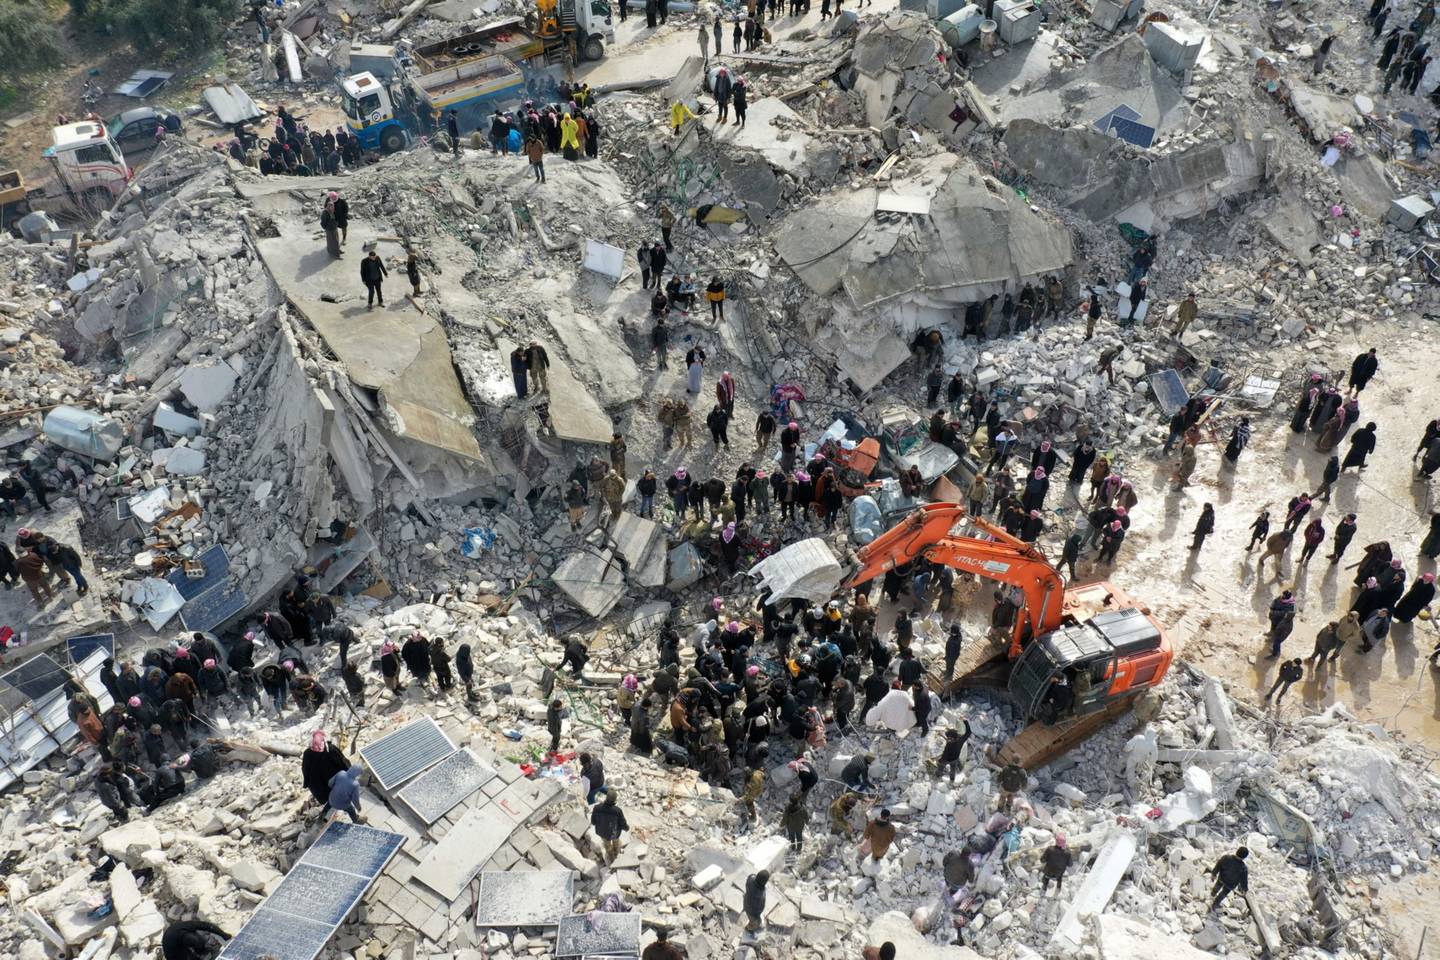 Esta vista aérea muestra a los residentes, ayudados por equipos pesados, buscando víctimas y supervivientes entre los escombros de los edificios derrumbados tras un terremoto en el pueblo de Besnia, cerca del twon de Harim, en la provincia siria de Idlib, controlada por los rebeldes, en la frontera con Turquía, el 6 de febrero de 2022. Fotógrafo: Omar Haj Kadour/AFP/Getty Images